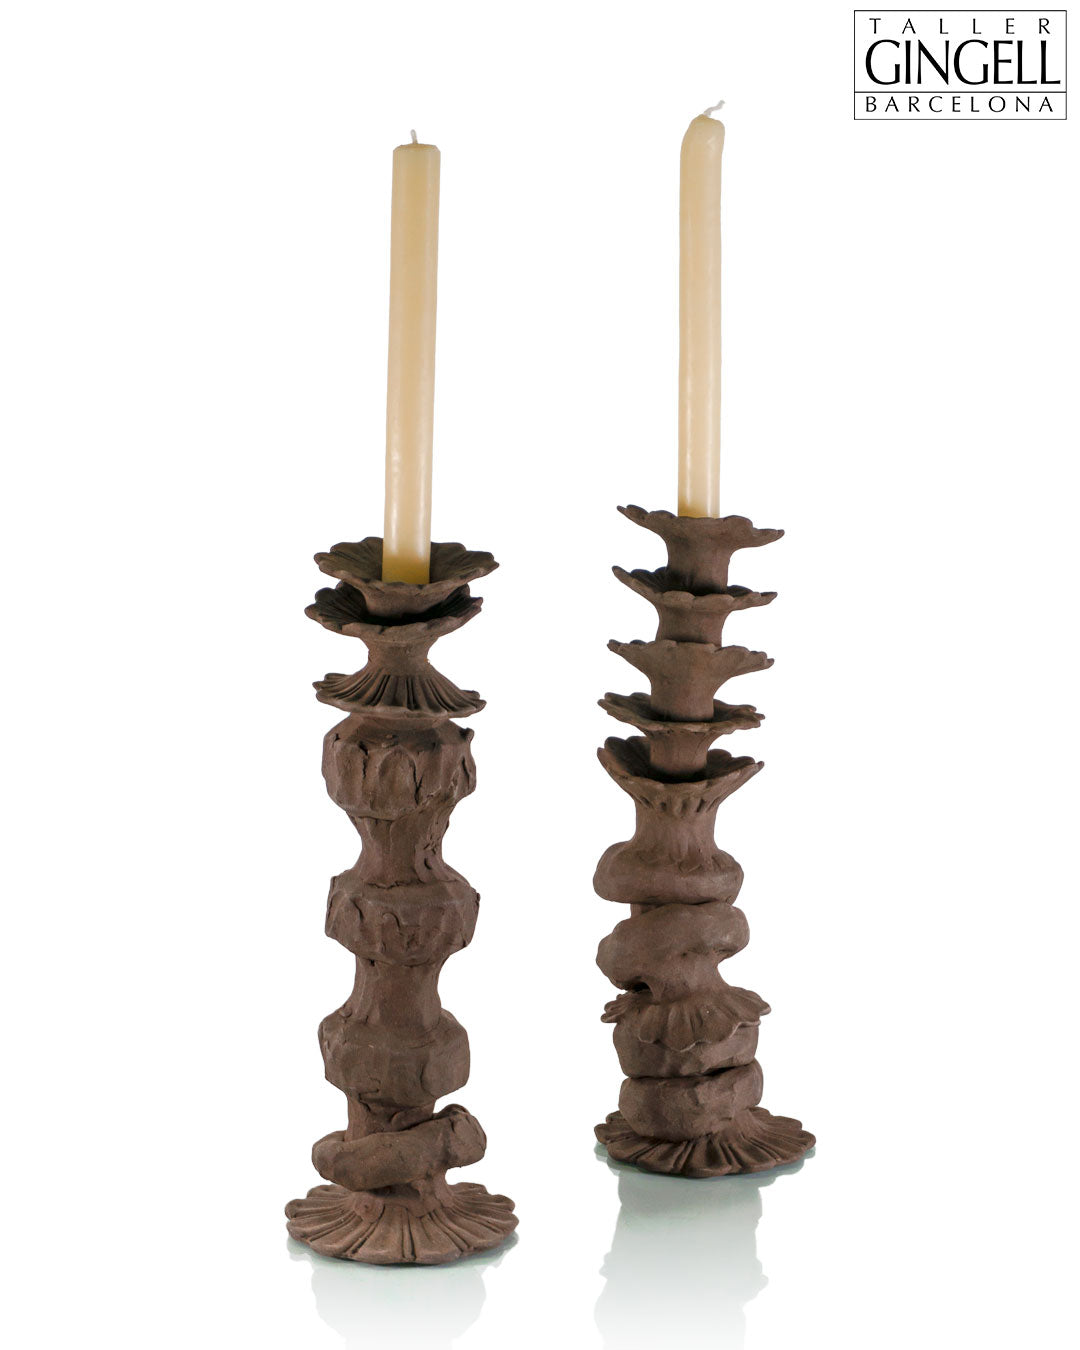 Porta espelmes de ceràmica (32 cm)